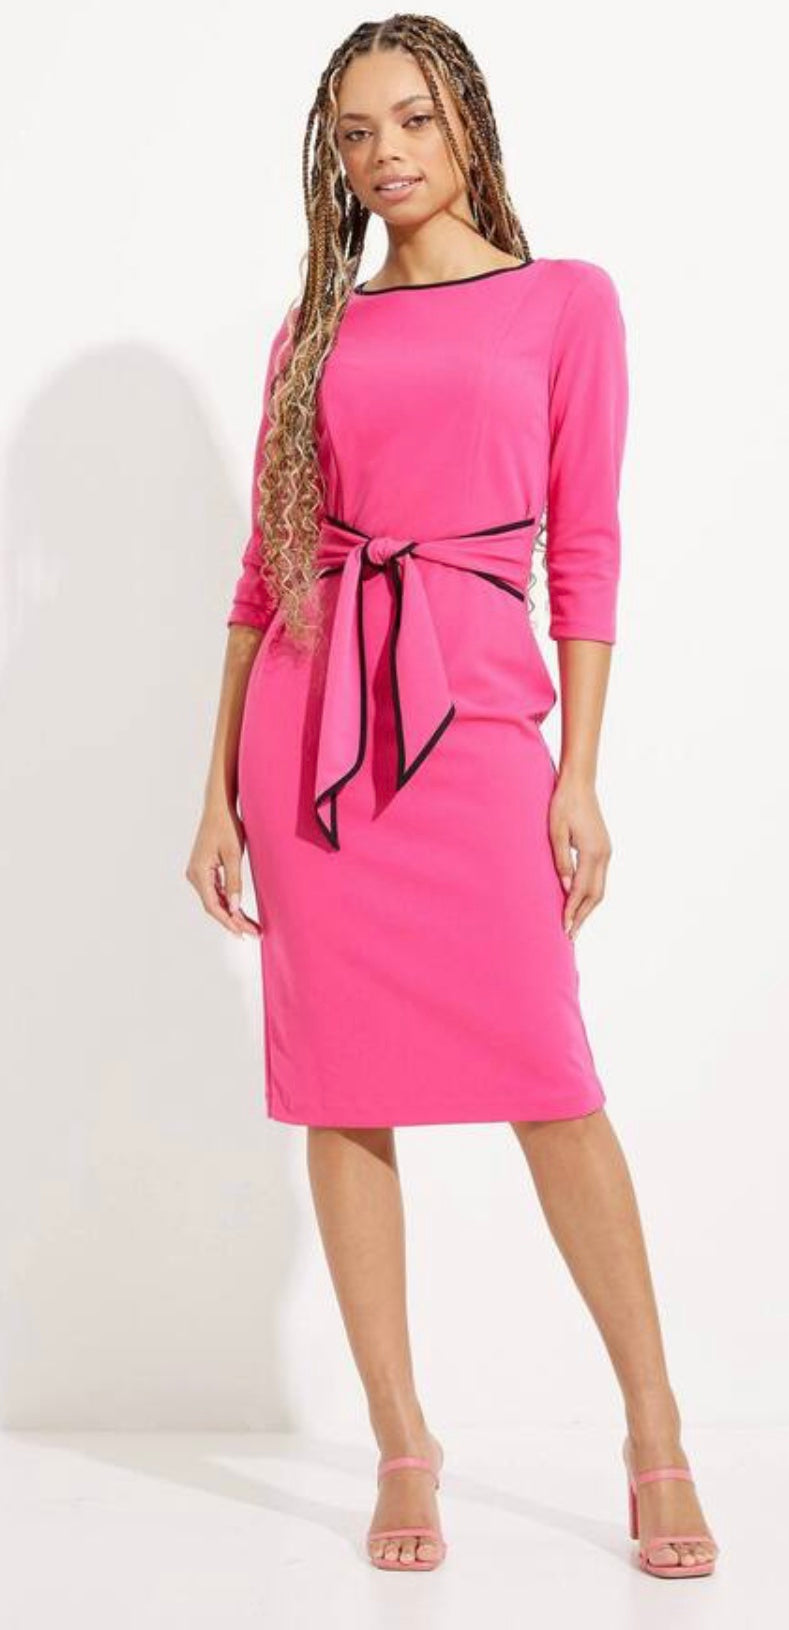 Joseph Ribkoff 221210 Pink/Black dress